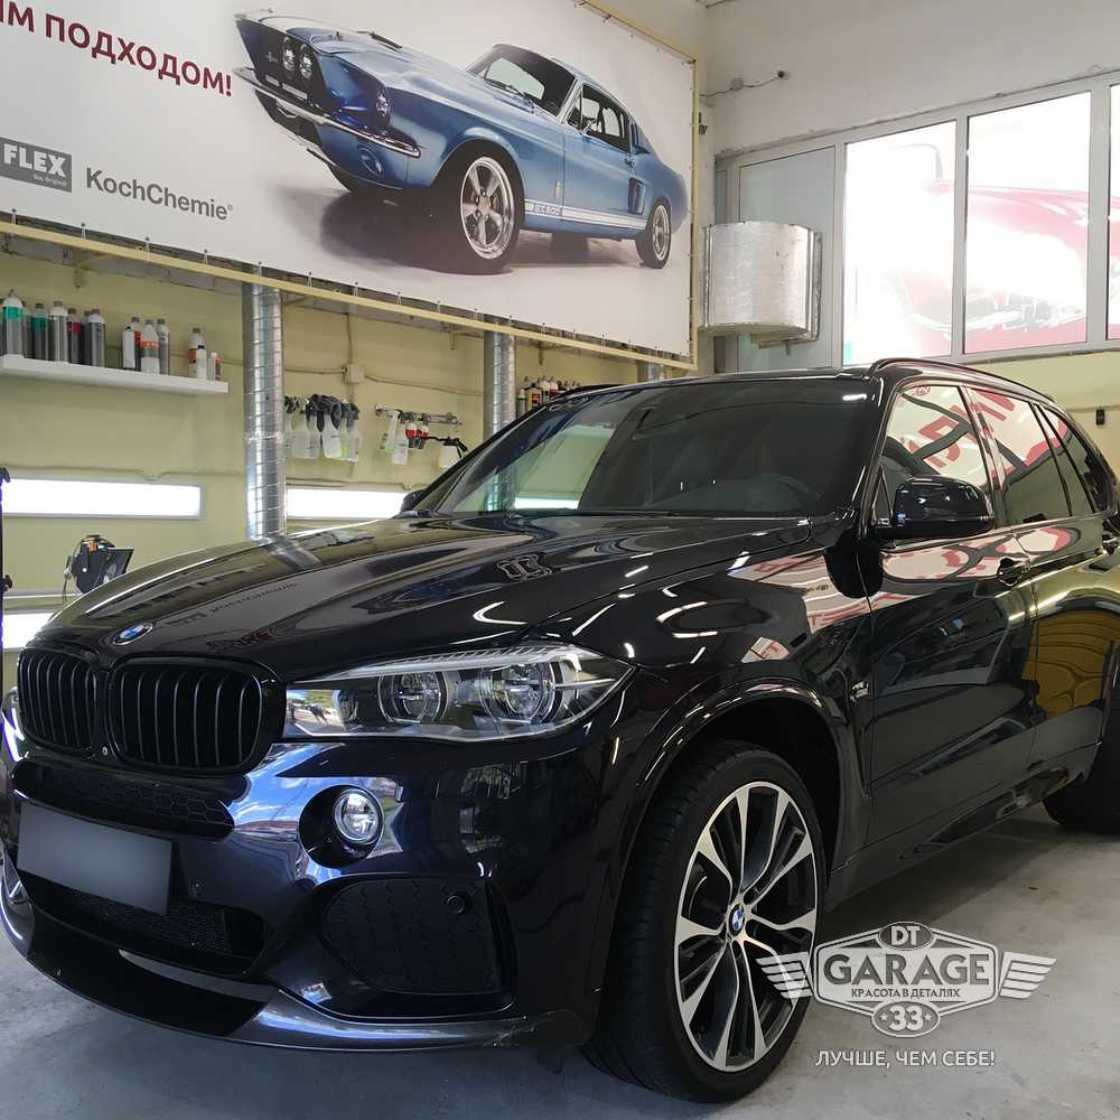 На фото BMW X5 после завершения обслуживания.